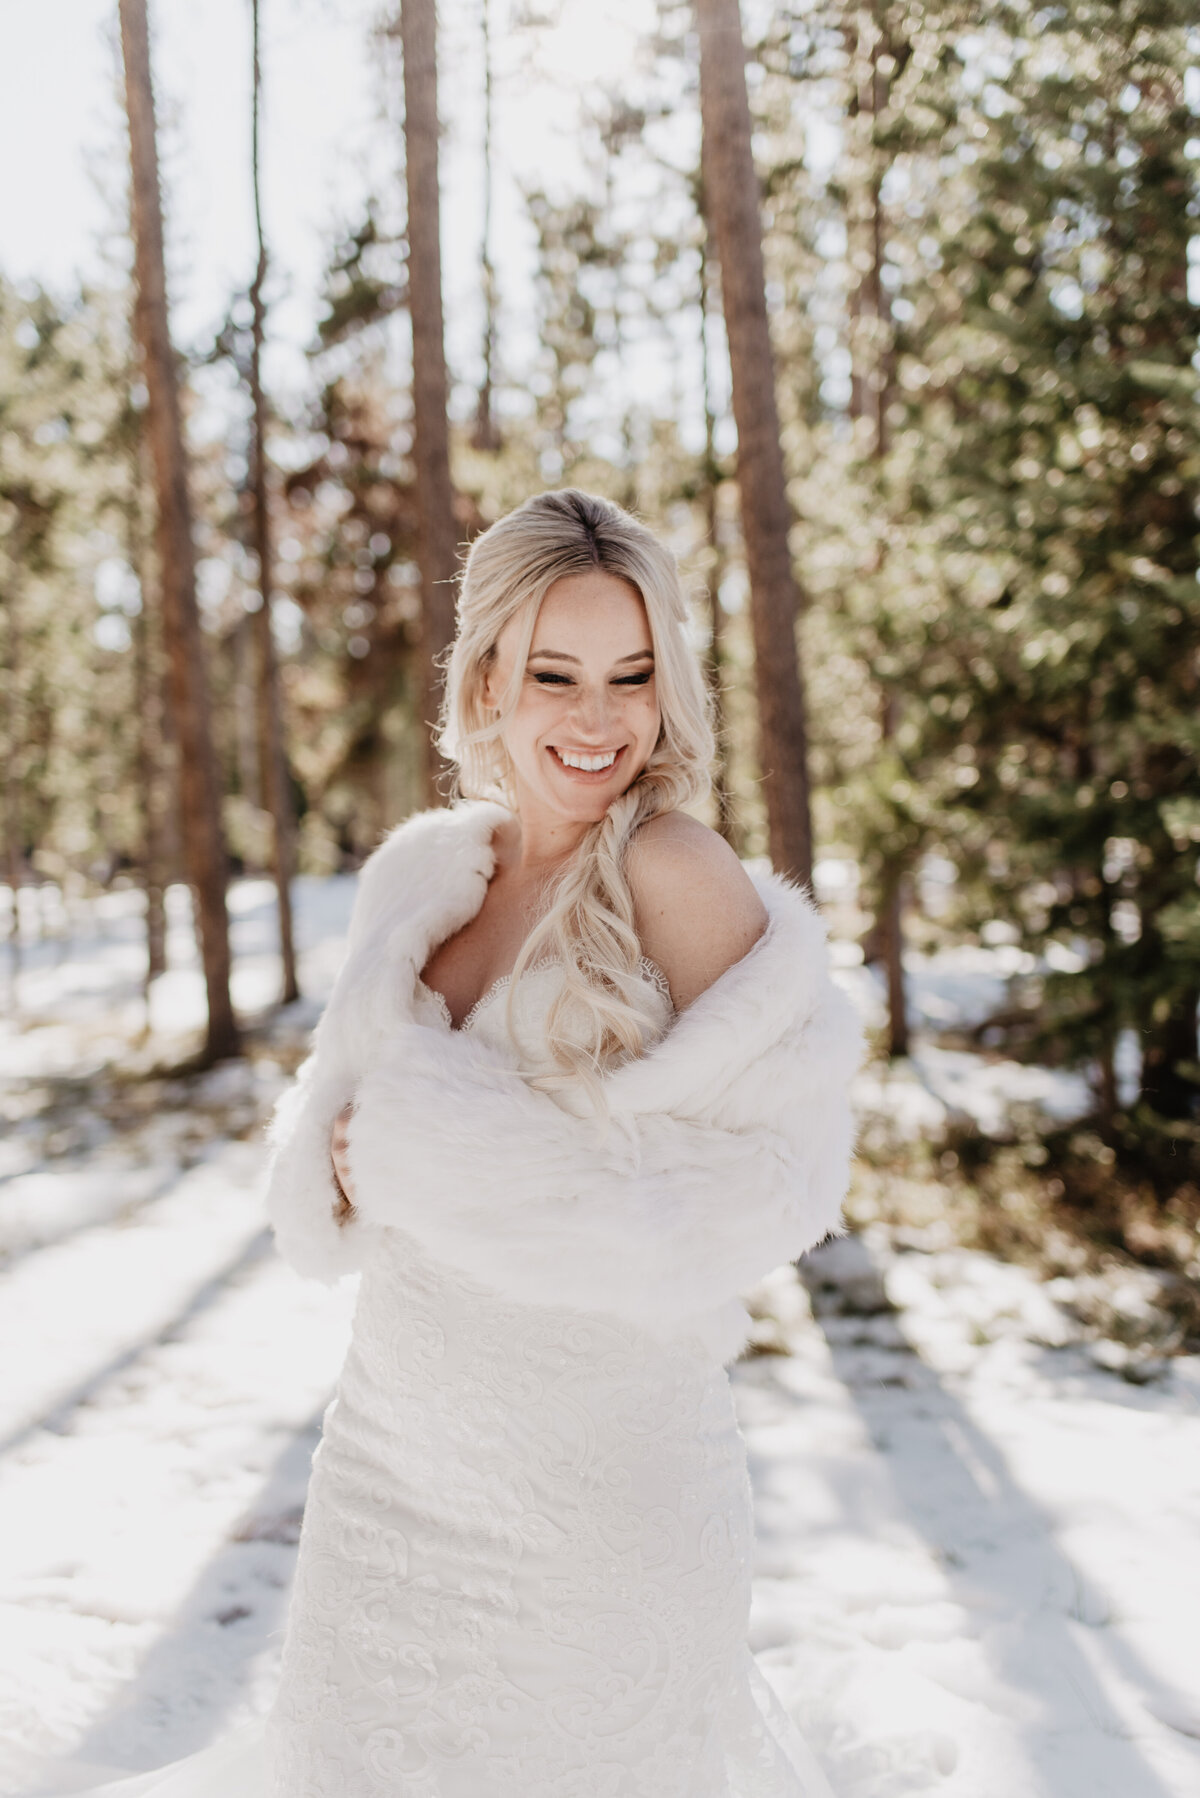 Jackson Hole Photographers capture bride wearing fur jacket